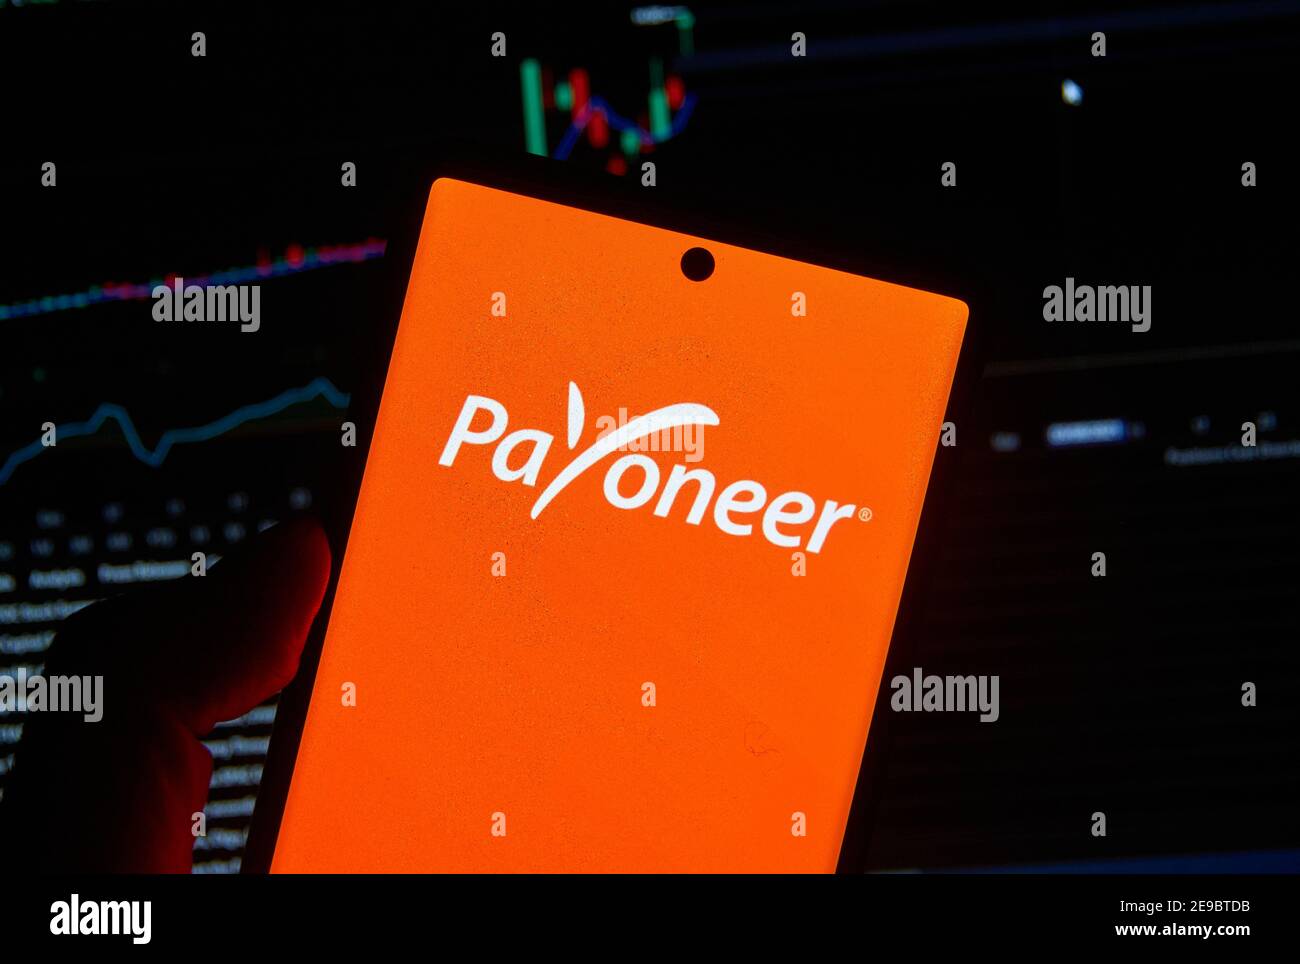 Montreal, Canadá - 3 de febrero de 2021: Logotipo de Payoneer en un teléfono celular sobre un cuadro de valores. Payoneer es una empresa financiera que proporciona dinero en línea transfe Foto de stock